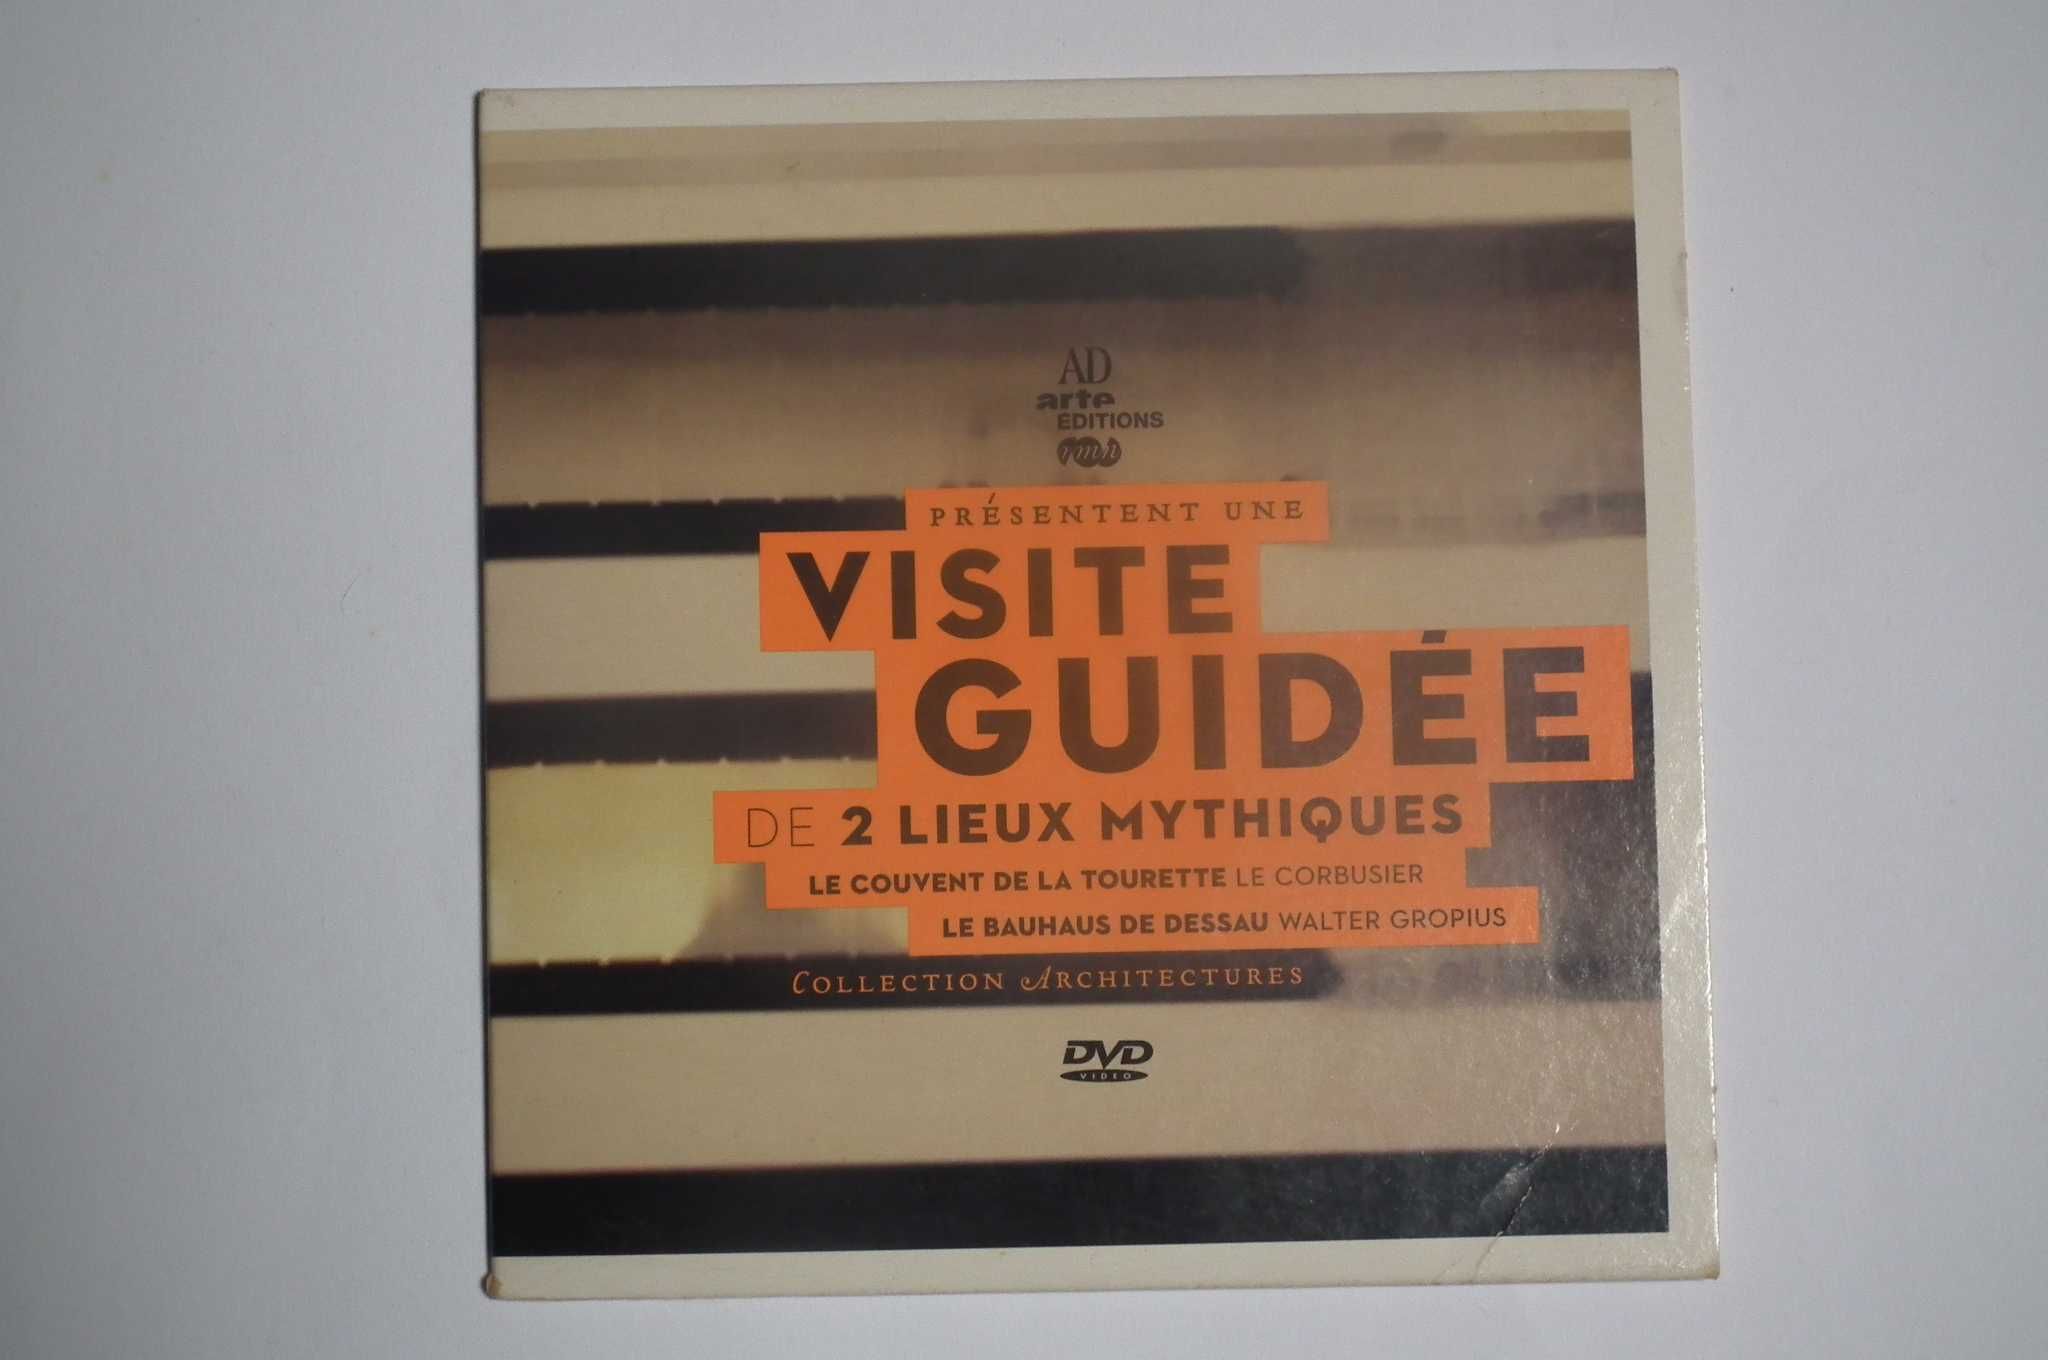 Documentários sobre a Bauhaus de Dessau e Convento de La Tourette.